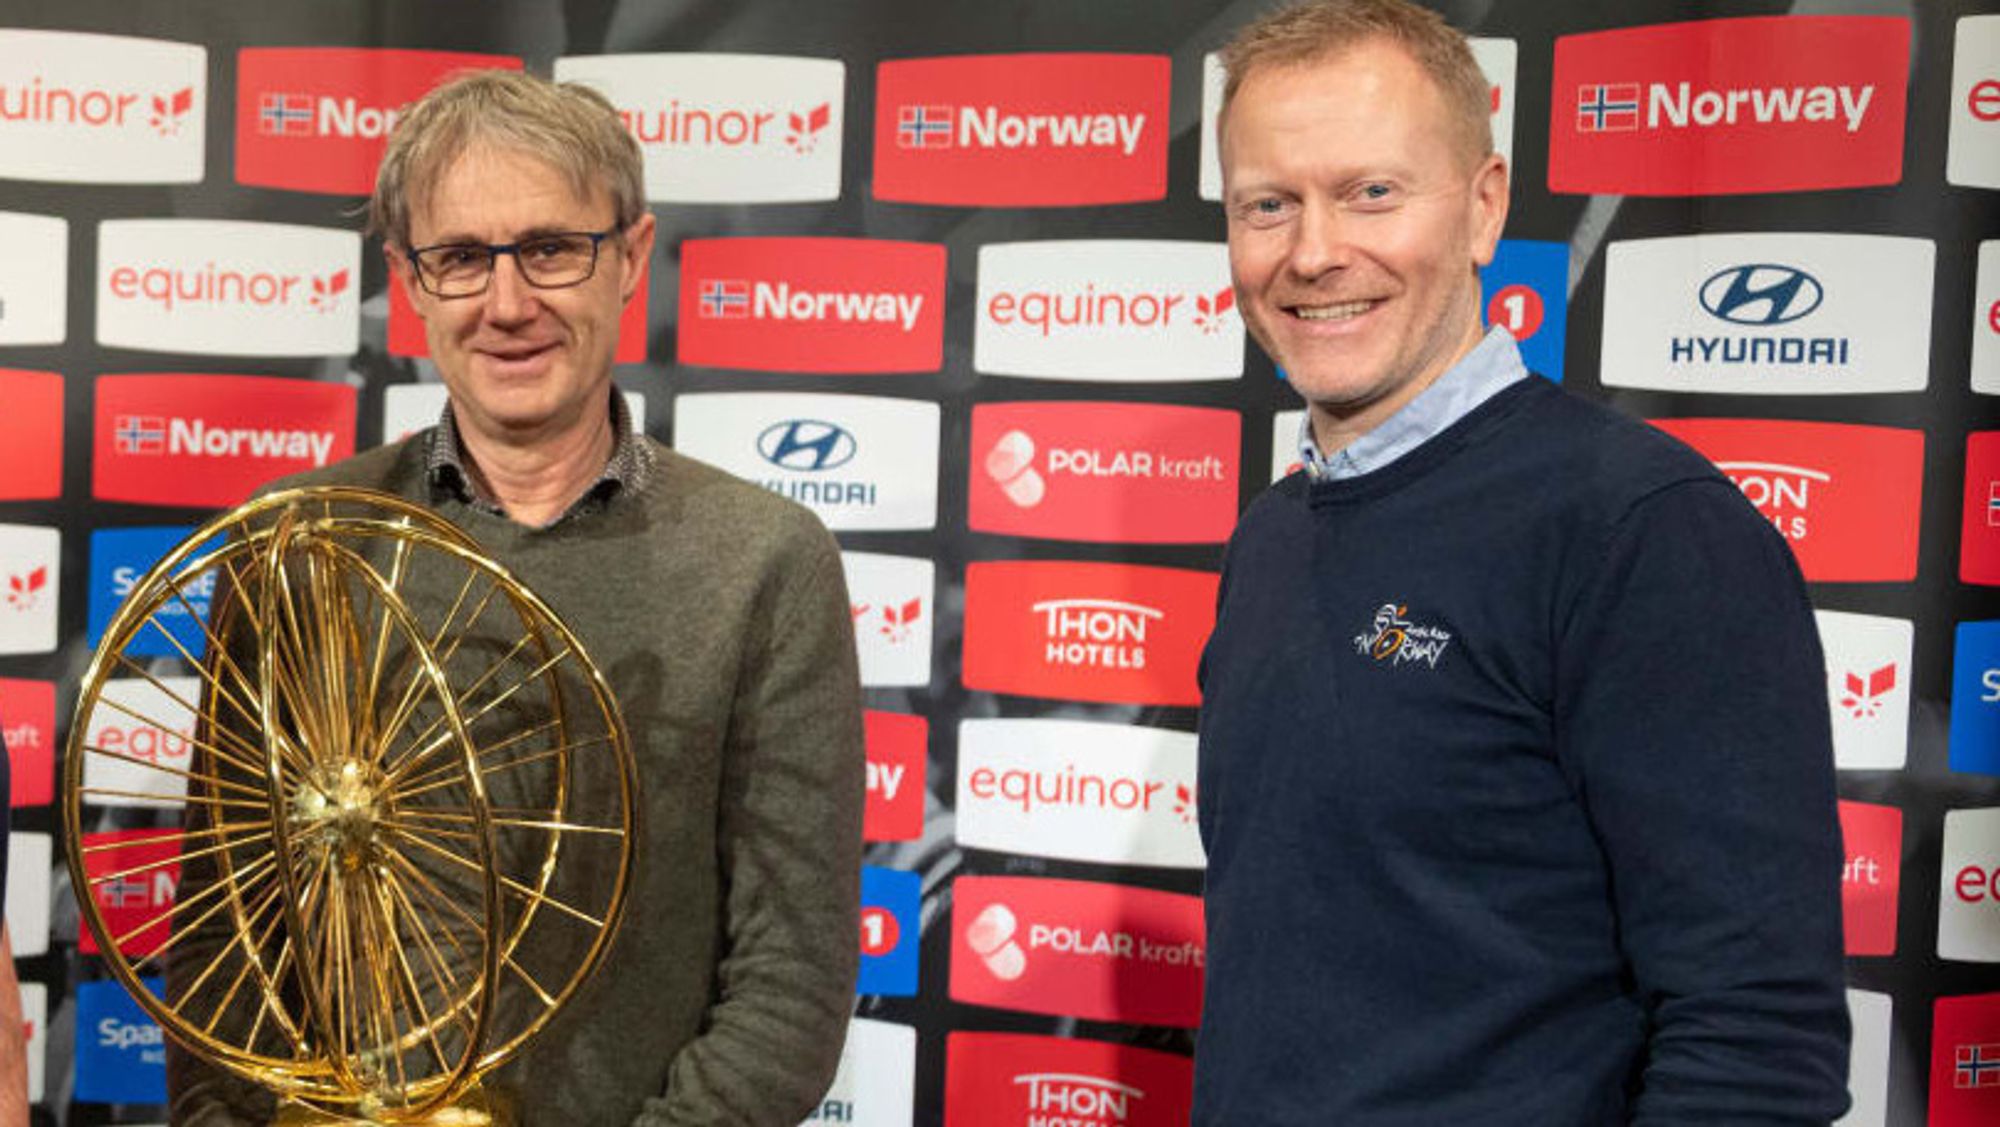 Telenors dekningsdirektør Bjørn Amundsen (til venstre) og Arctic Race of Norway-sjef Knut Eirik Dybdal mener sykkelrittet har vært viktig for oppgraderingen av mobilnettet i Nord-Norge de siste årene.